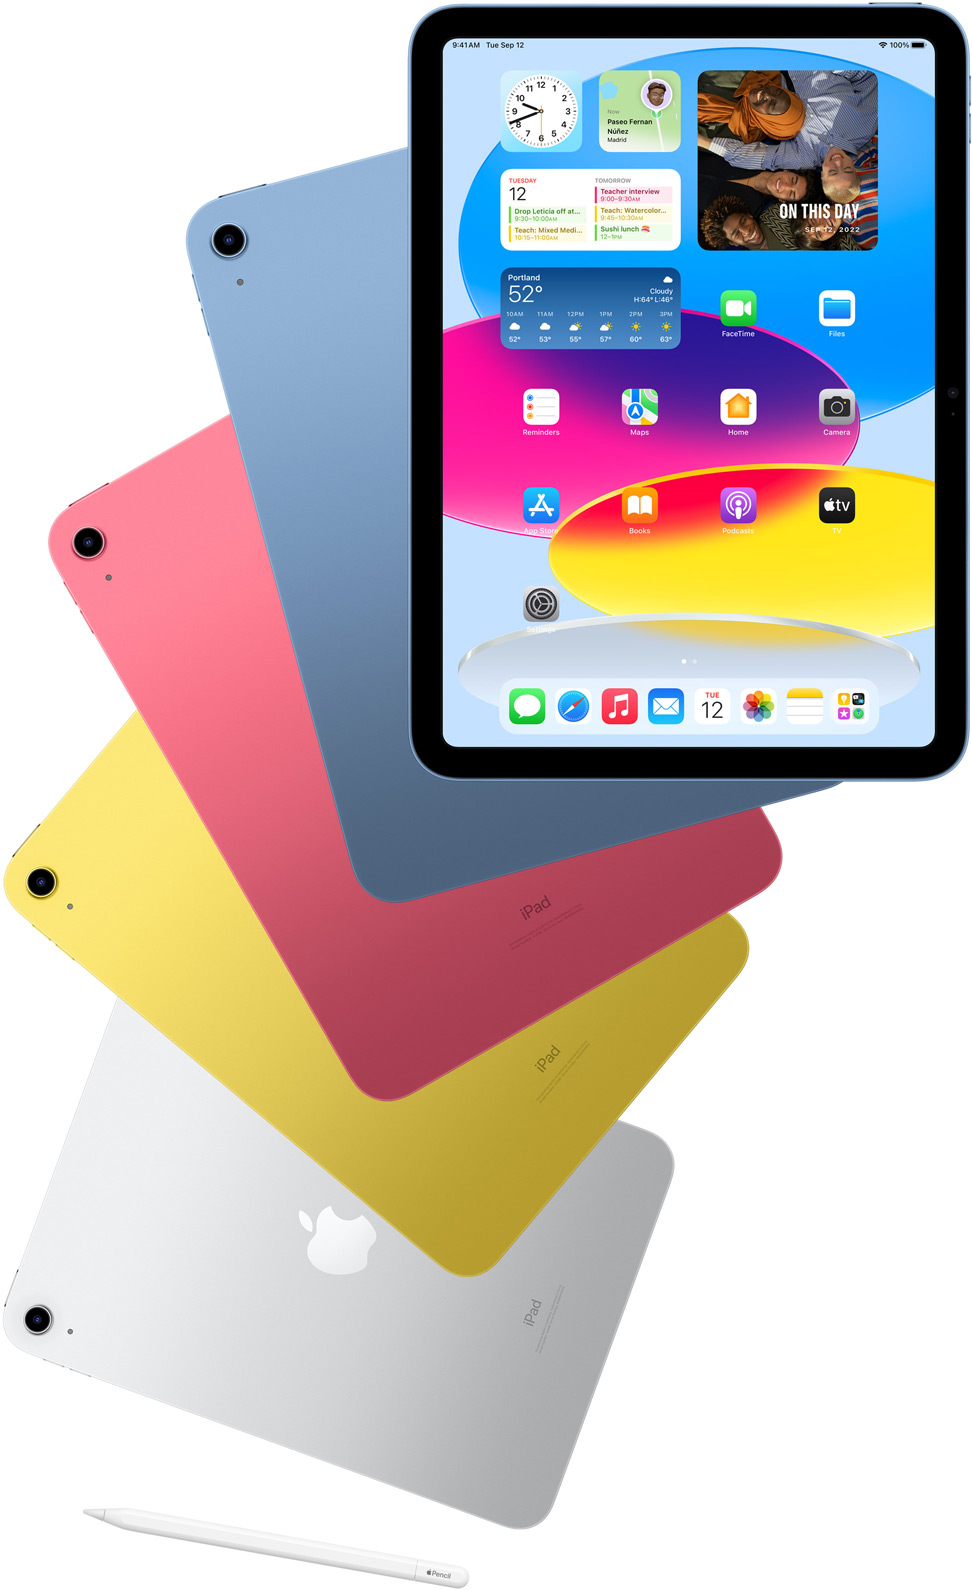 Edestä kuvattu iPad, jossa näkyy Koti-valikko, sen takana sininen, pinkki, keltainen ja hopeanvärinen iPad takaa kuvattuna. Apple Pencil järjestyksessä olevien iPad-mallien lähellä.